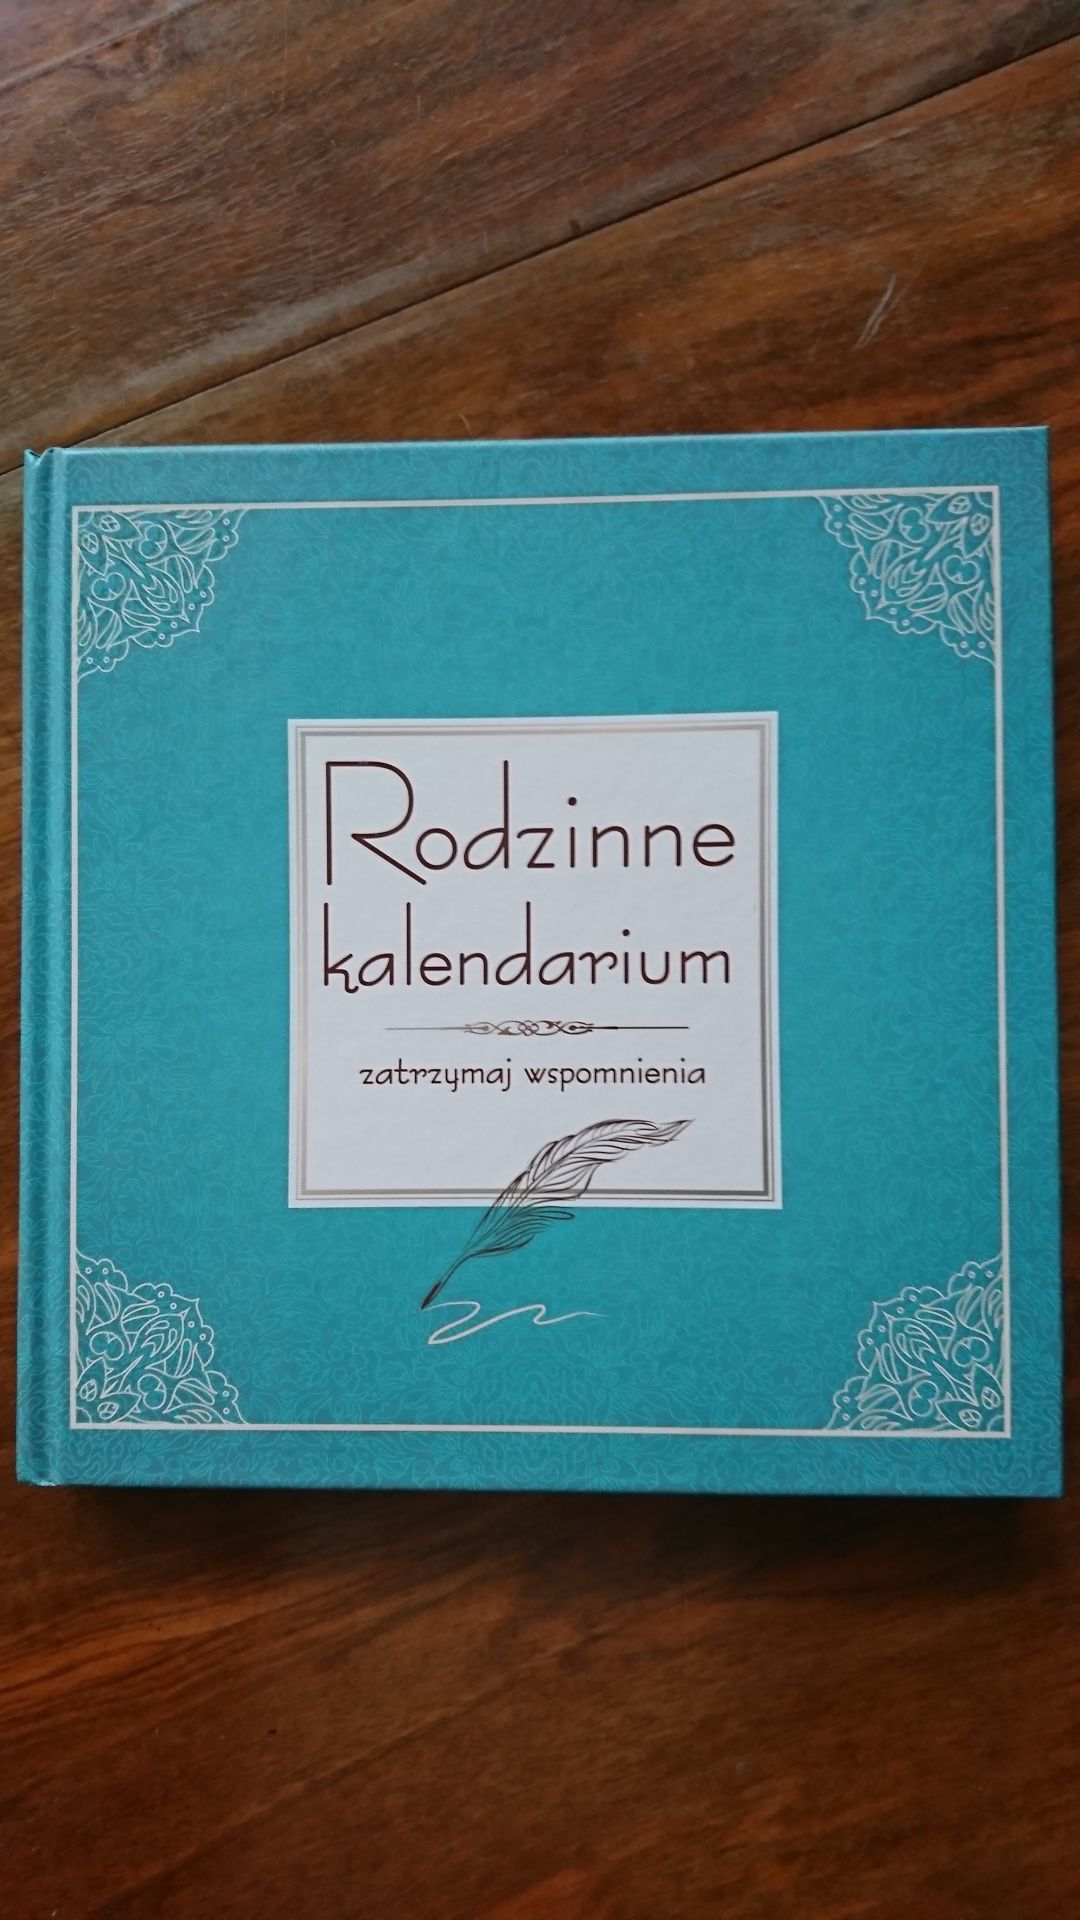 Rodzinne kalendarium, wydawnictwo Olesiejuk